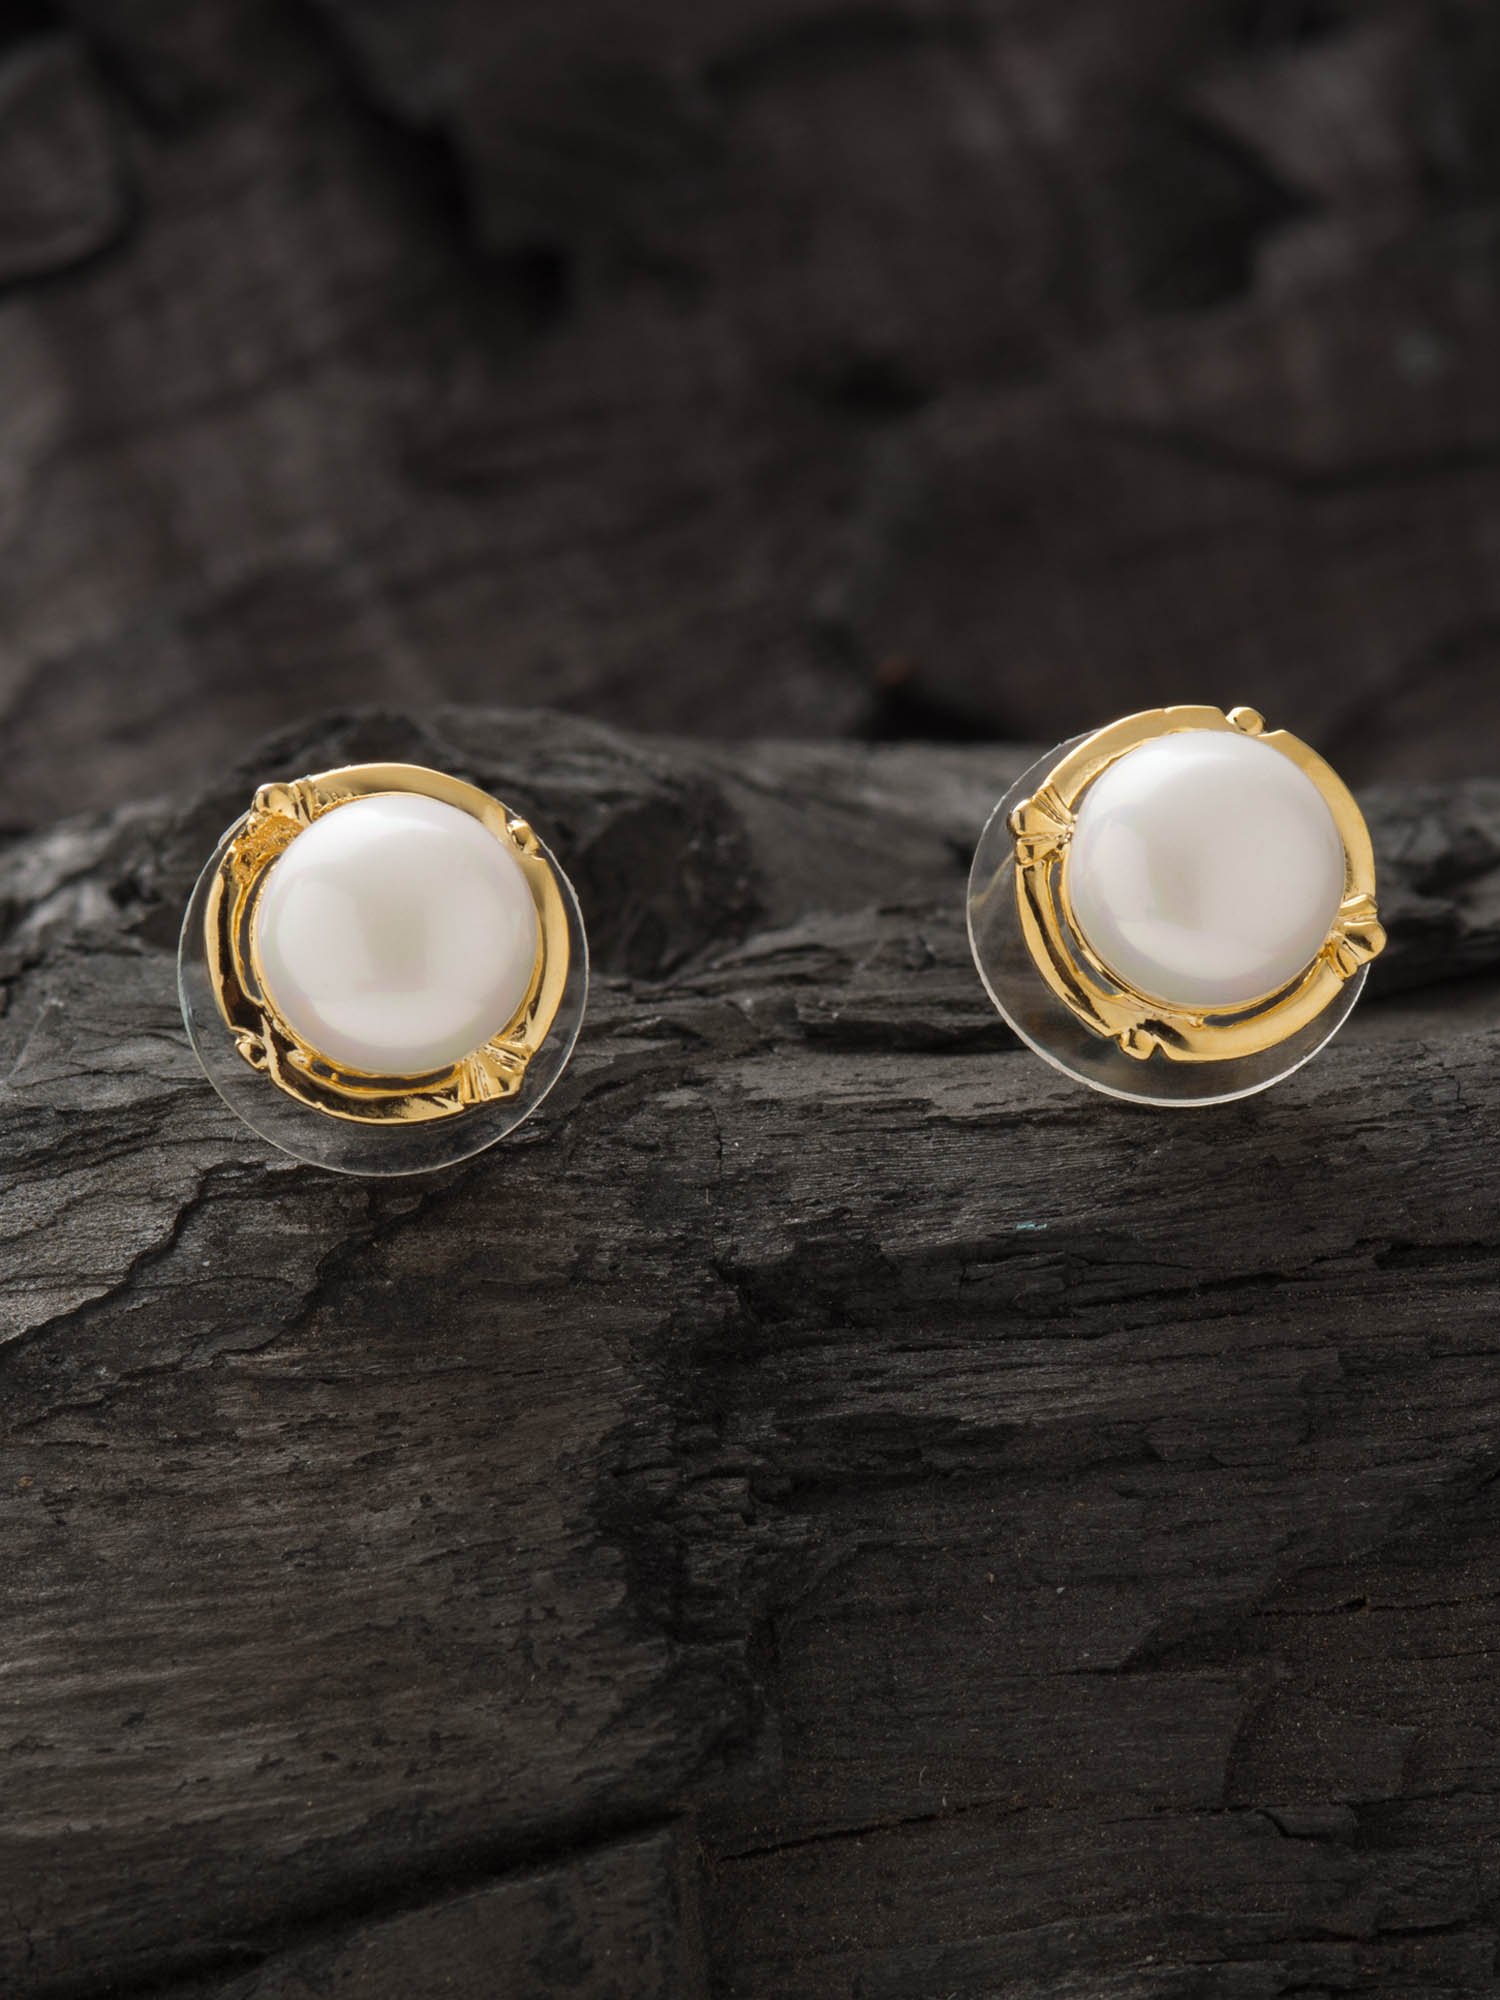 Michelle Pearl 14k Yellow Gold Stud Earrings in White Pearl | Kendra Scott